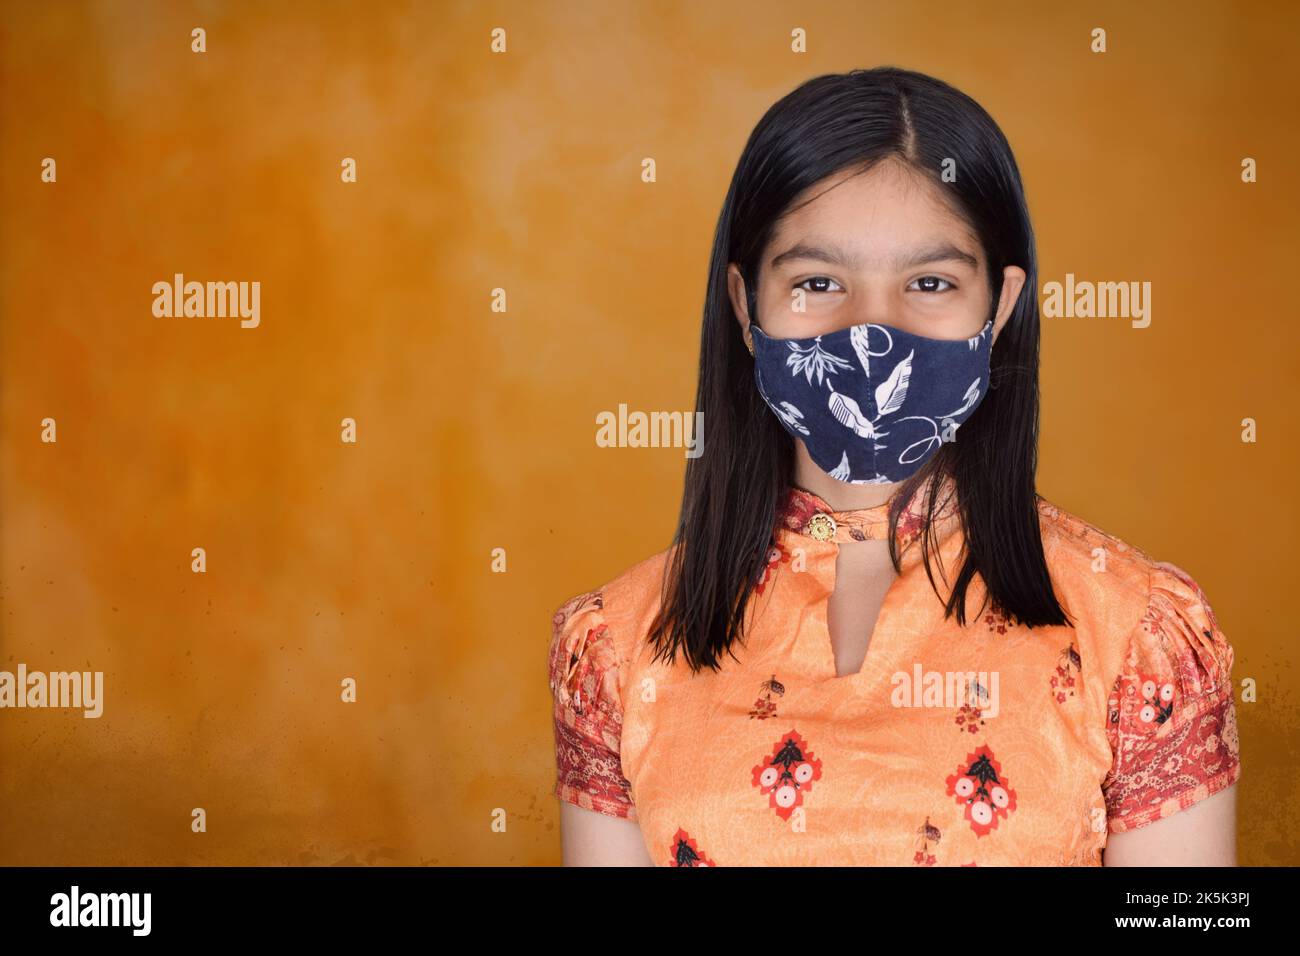 teenage girl with face mask against orange background Stock Photo